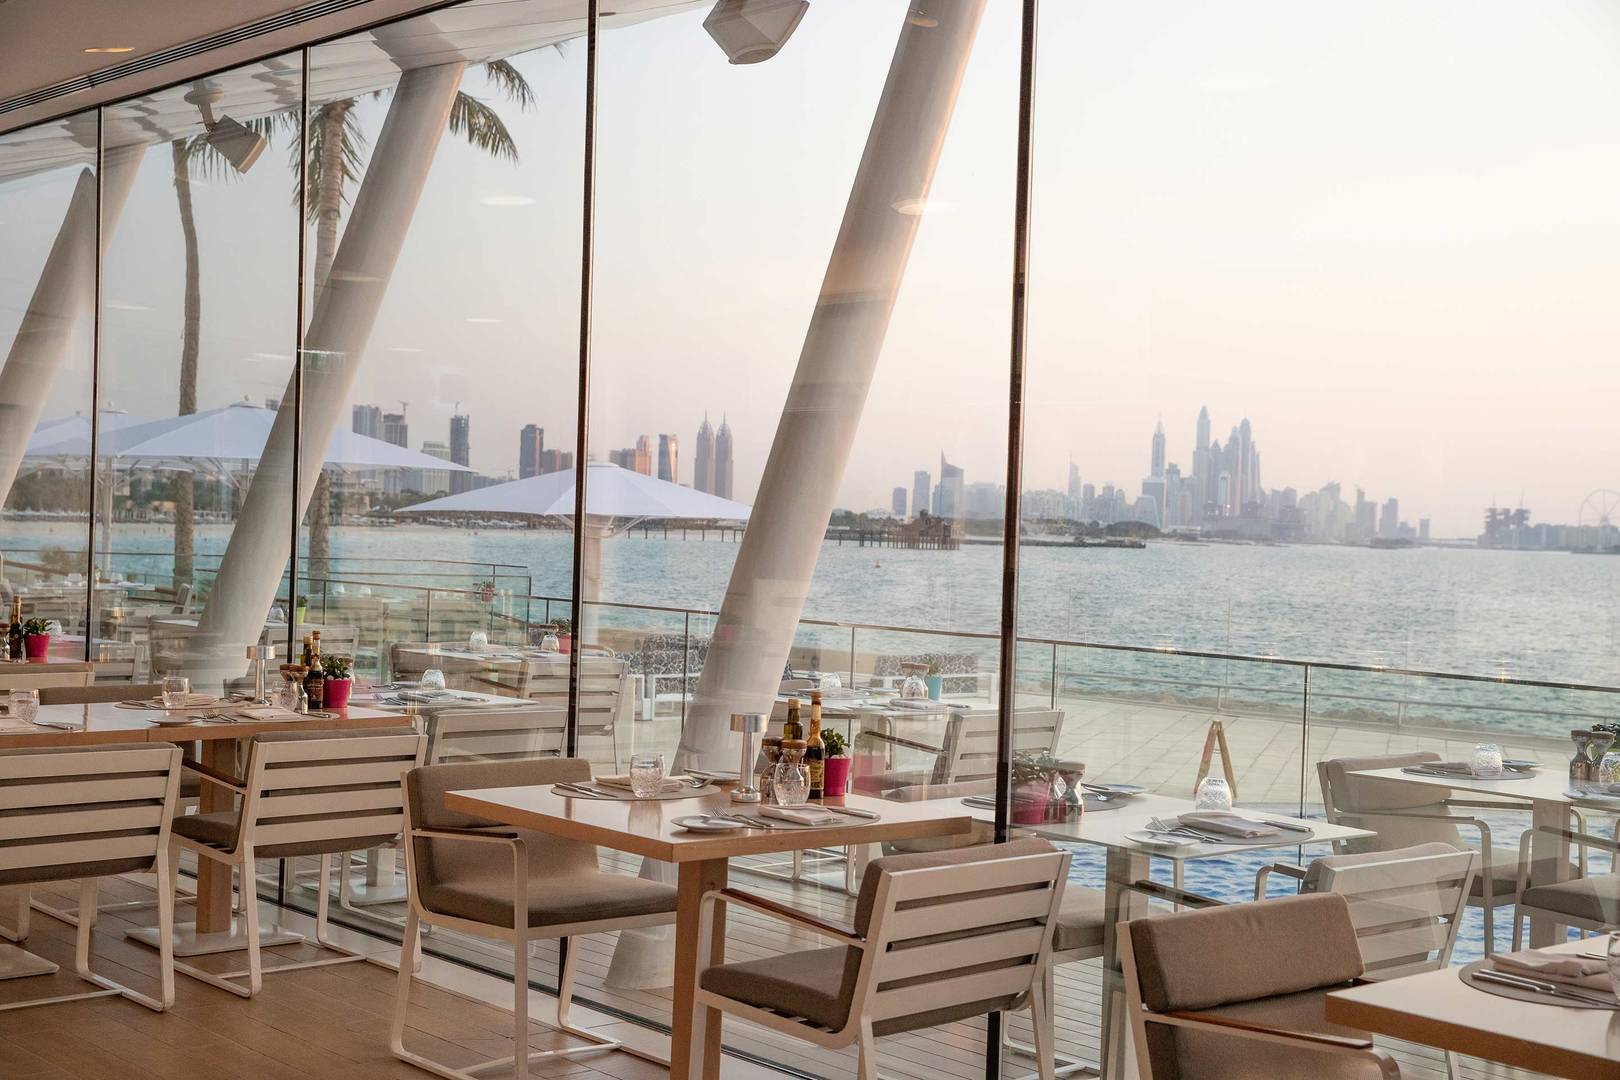 Jumeirah Burj Al Arab Bab Al Yam restaurant with beach and city view